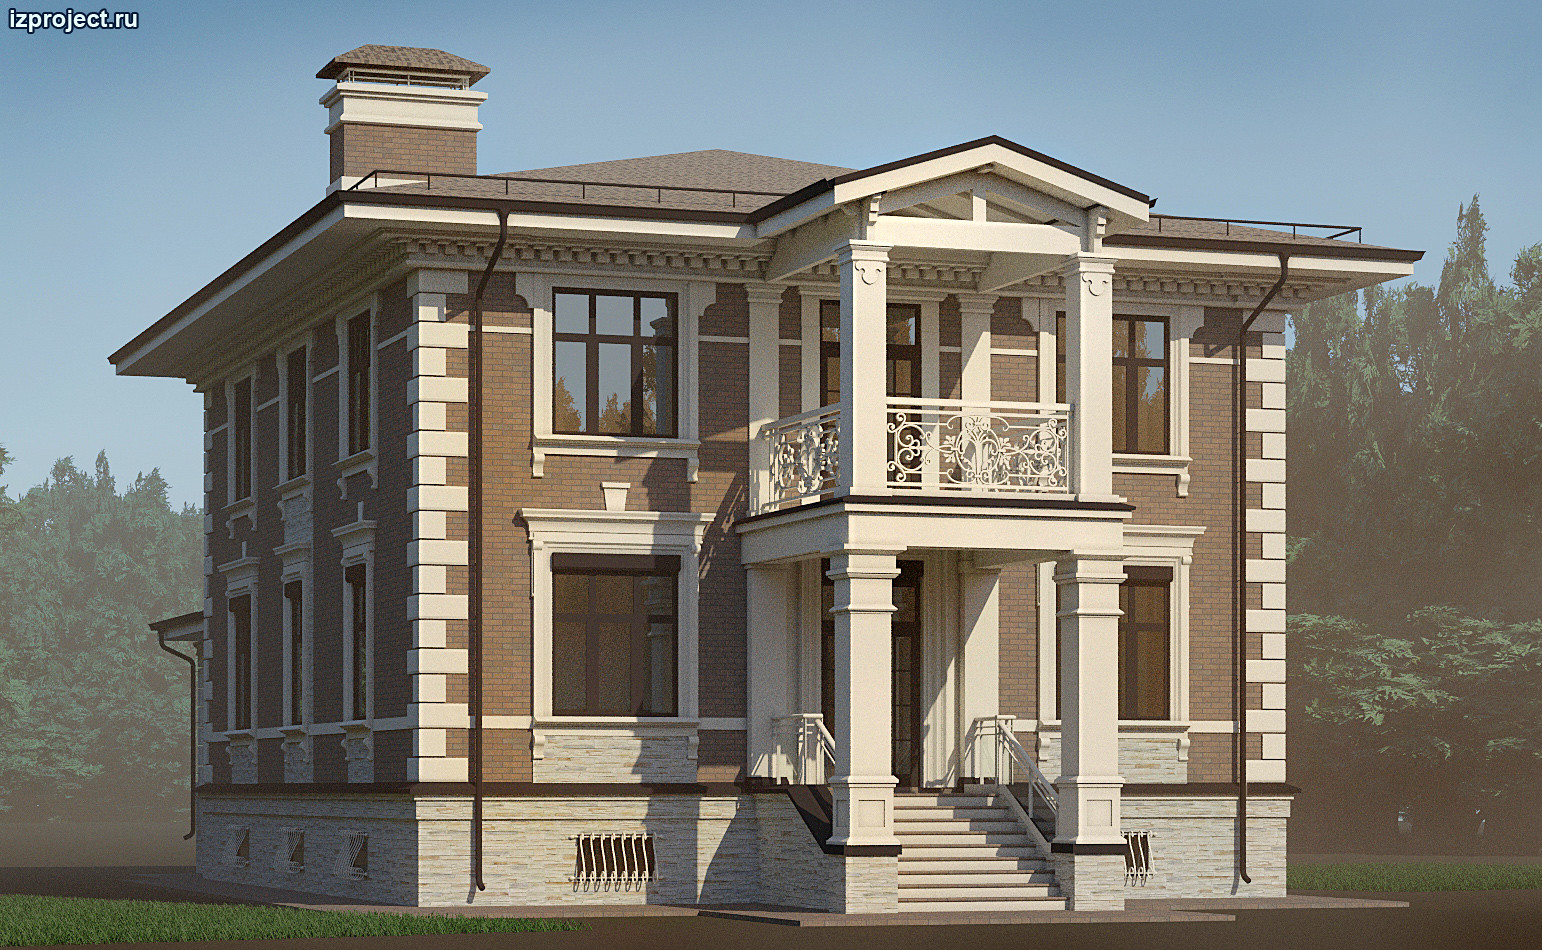 Частный архитектор загородных домов - эскиз декора фасадов кирпичного дома.